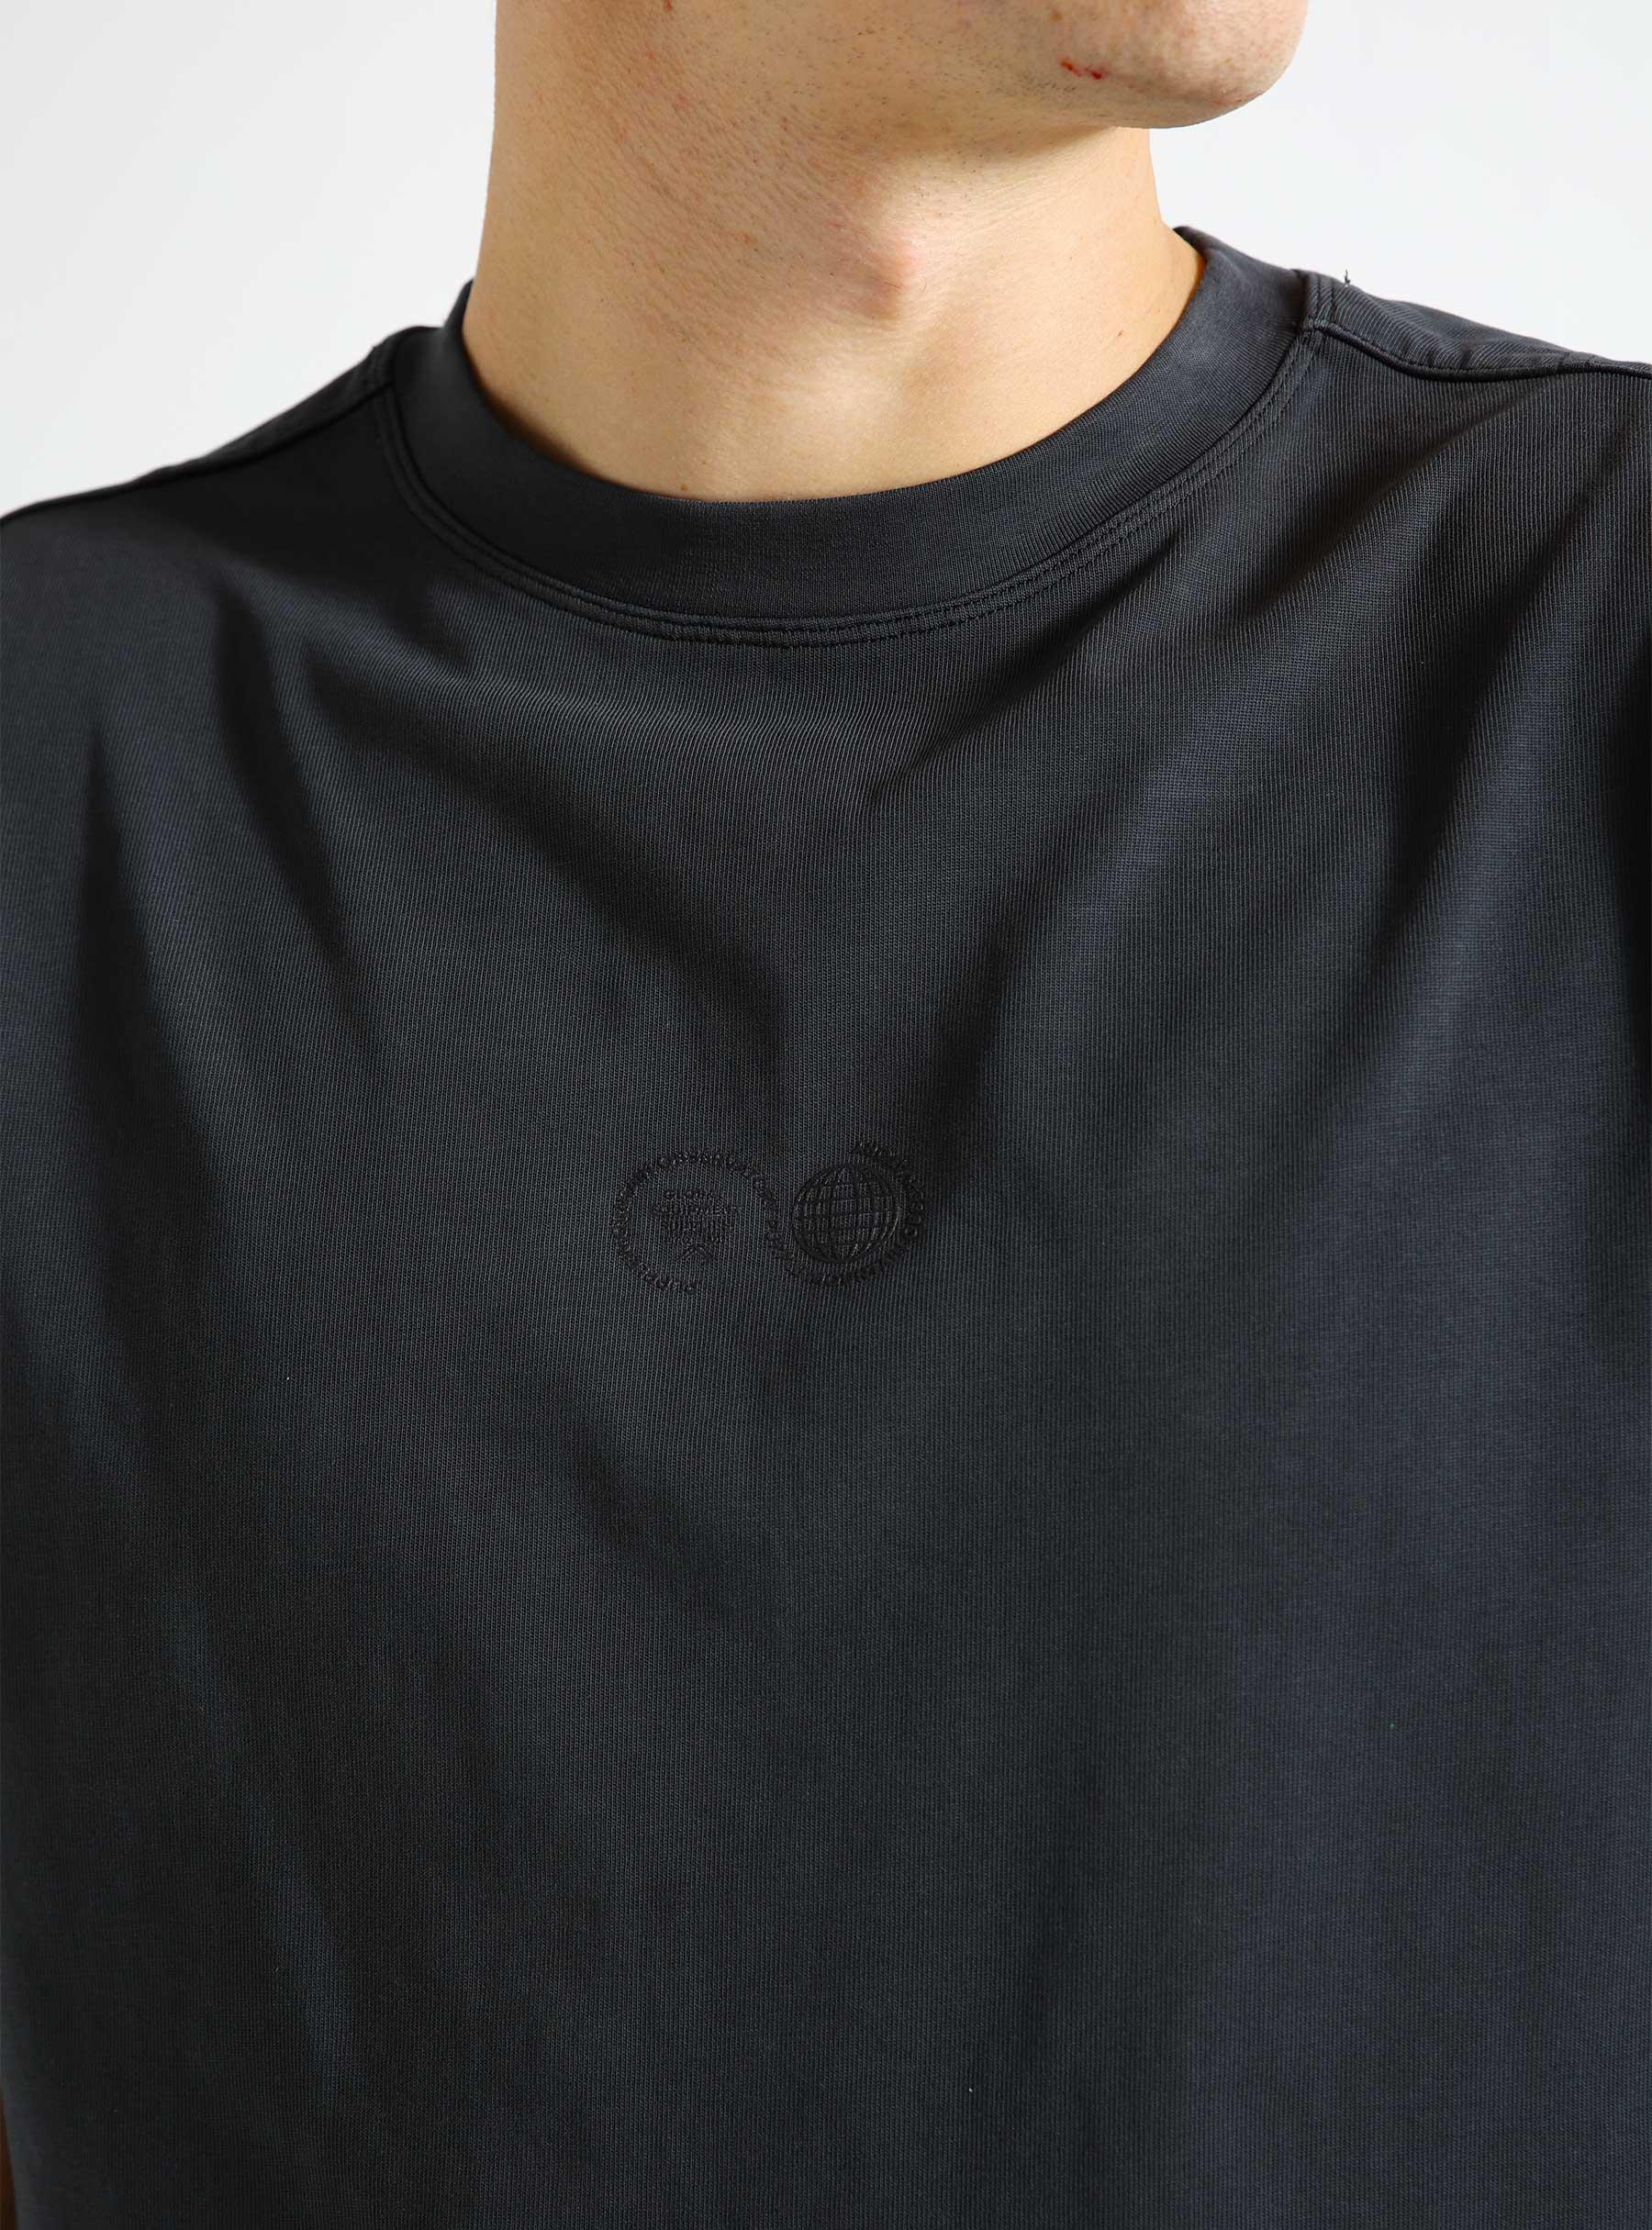 Garment Dyed T-shirt Black PMO2032-BL